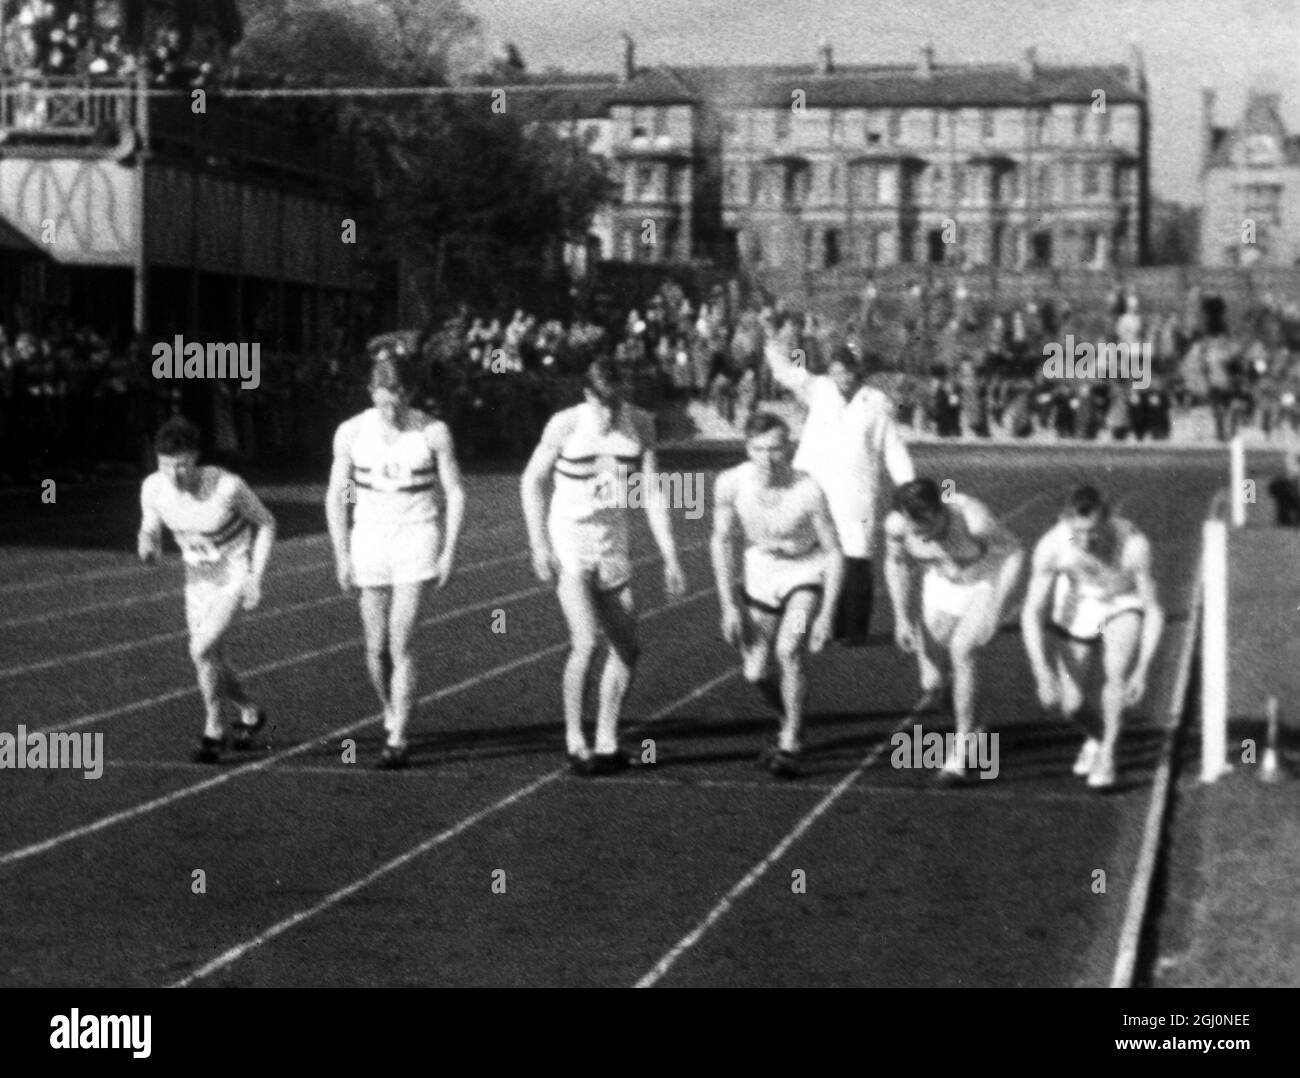 6 mai 1954 Roger Bannister (no 41) devient le premier homme à briser le mille de quatre minutes de course pour l'université d'Oxford avec un temps de 3 minutes 59.4 secondes. Photo au début de la course, Oxford, Angleterre. TopFoto.co.uk Banque D'Images